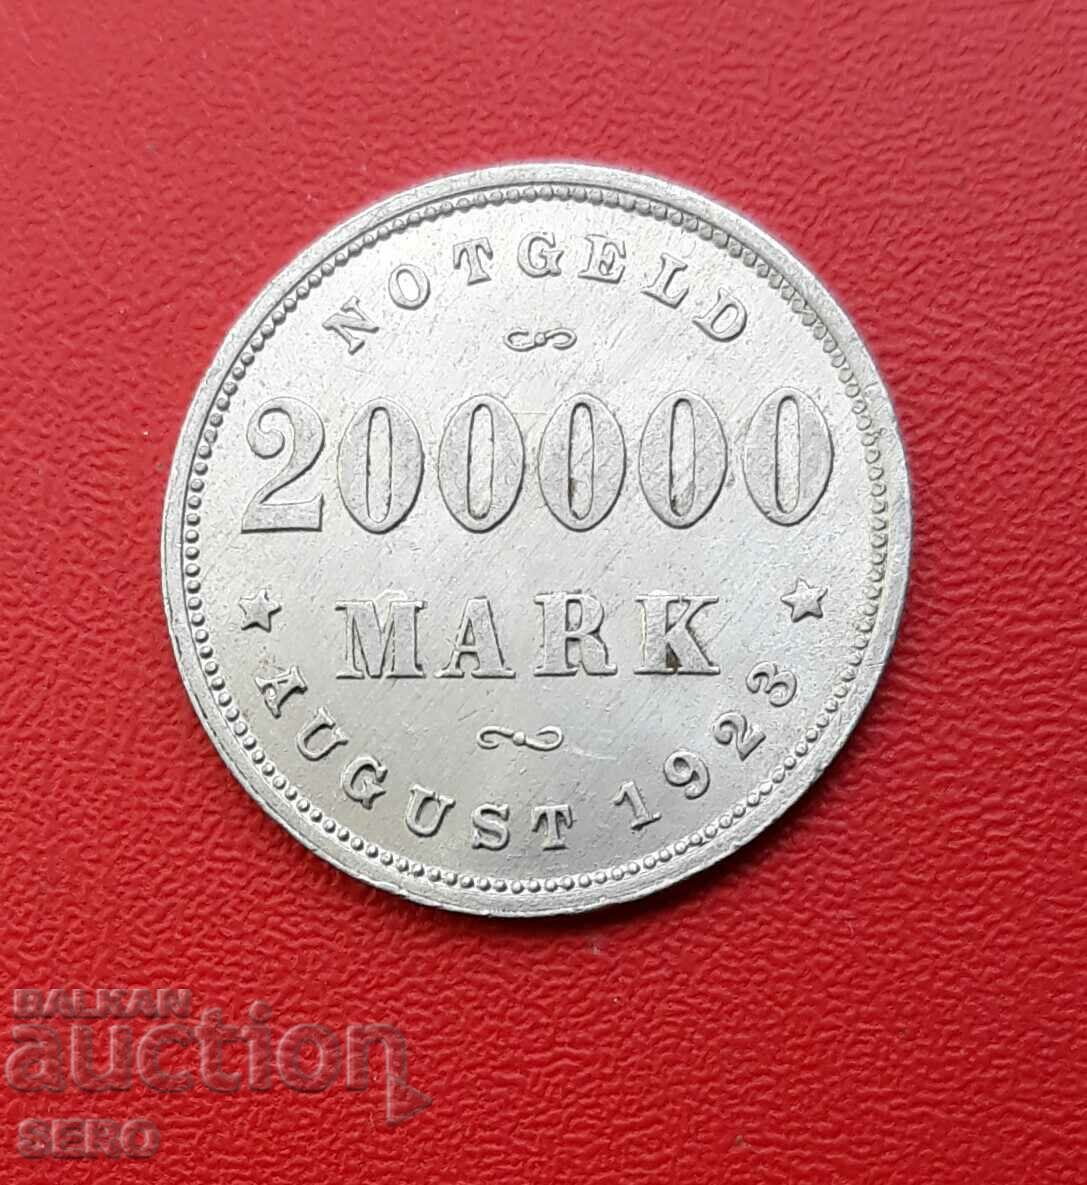 Germany-Hamburg-200,000 marks 1923